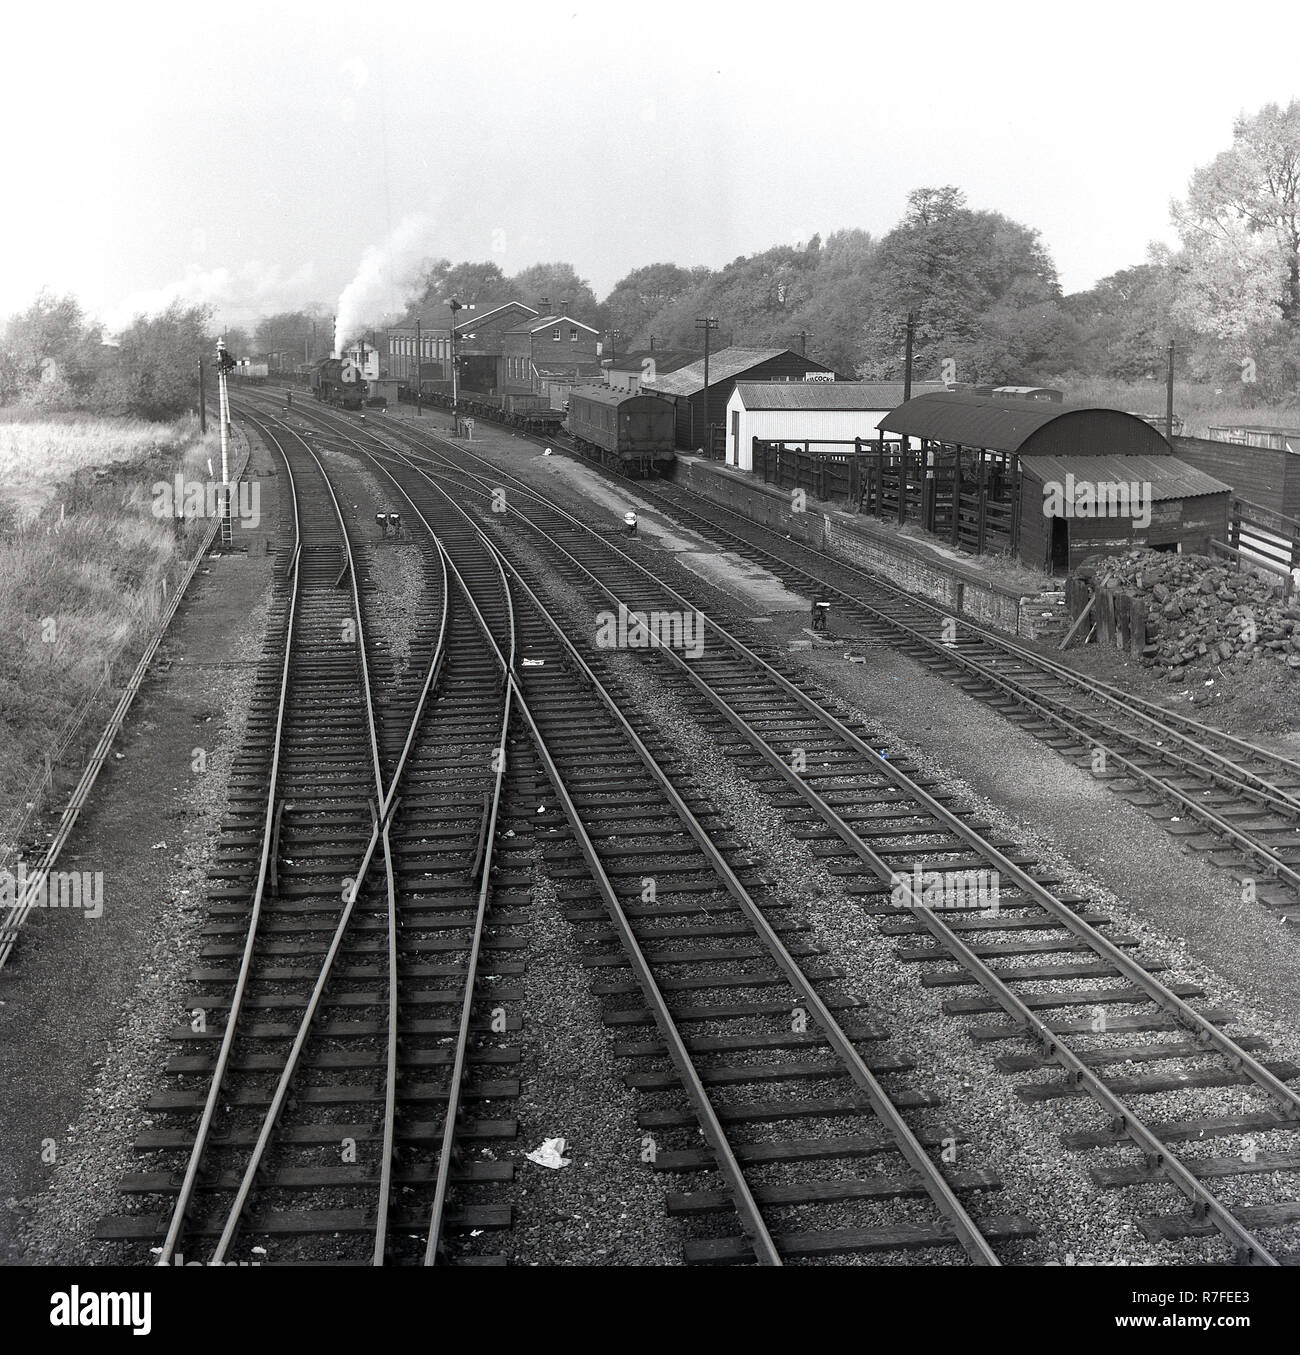 1964, locomotiva a vapore sul binario ferroviario, England, Regno Unito Foto Stock